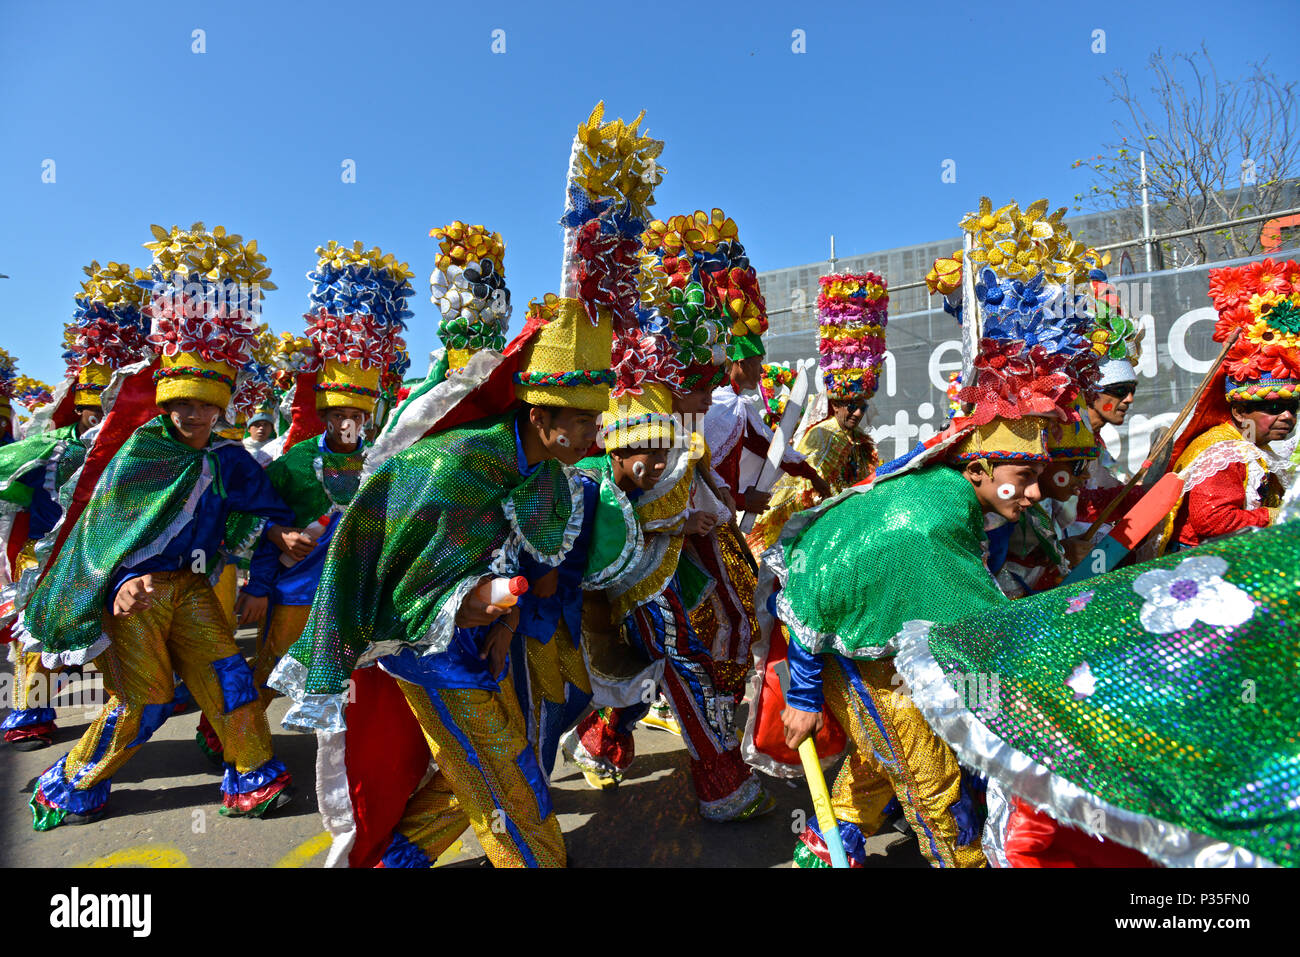 Eine der ältesten Kostüme von El Carnaval de Barranquilla ist der Kongo, Sie sagen, es war von einem einheimischen Krieg Tanz der Kongo, Afrika entstanden. Stockfoto